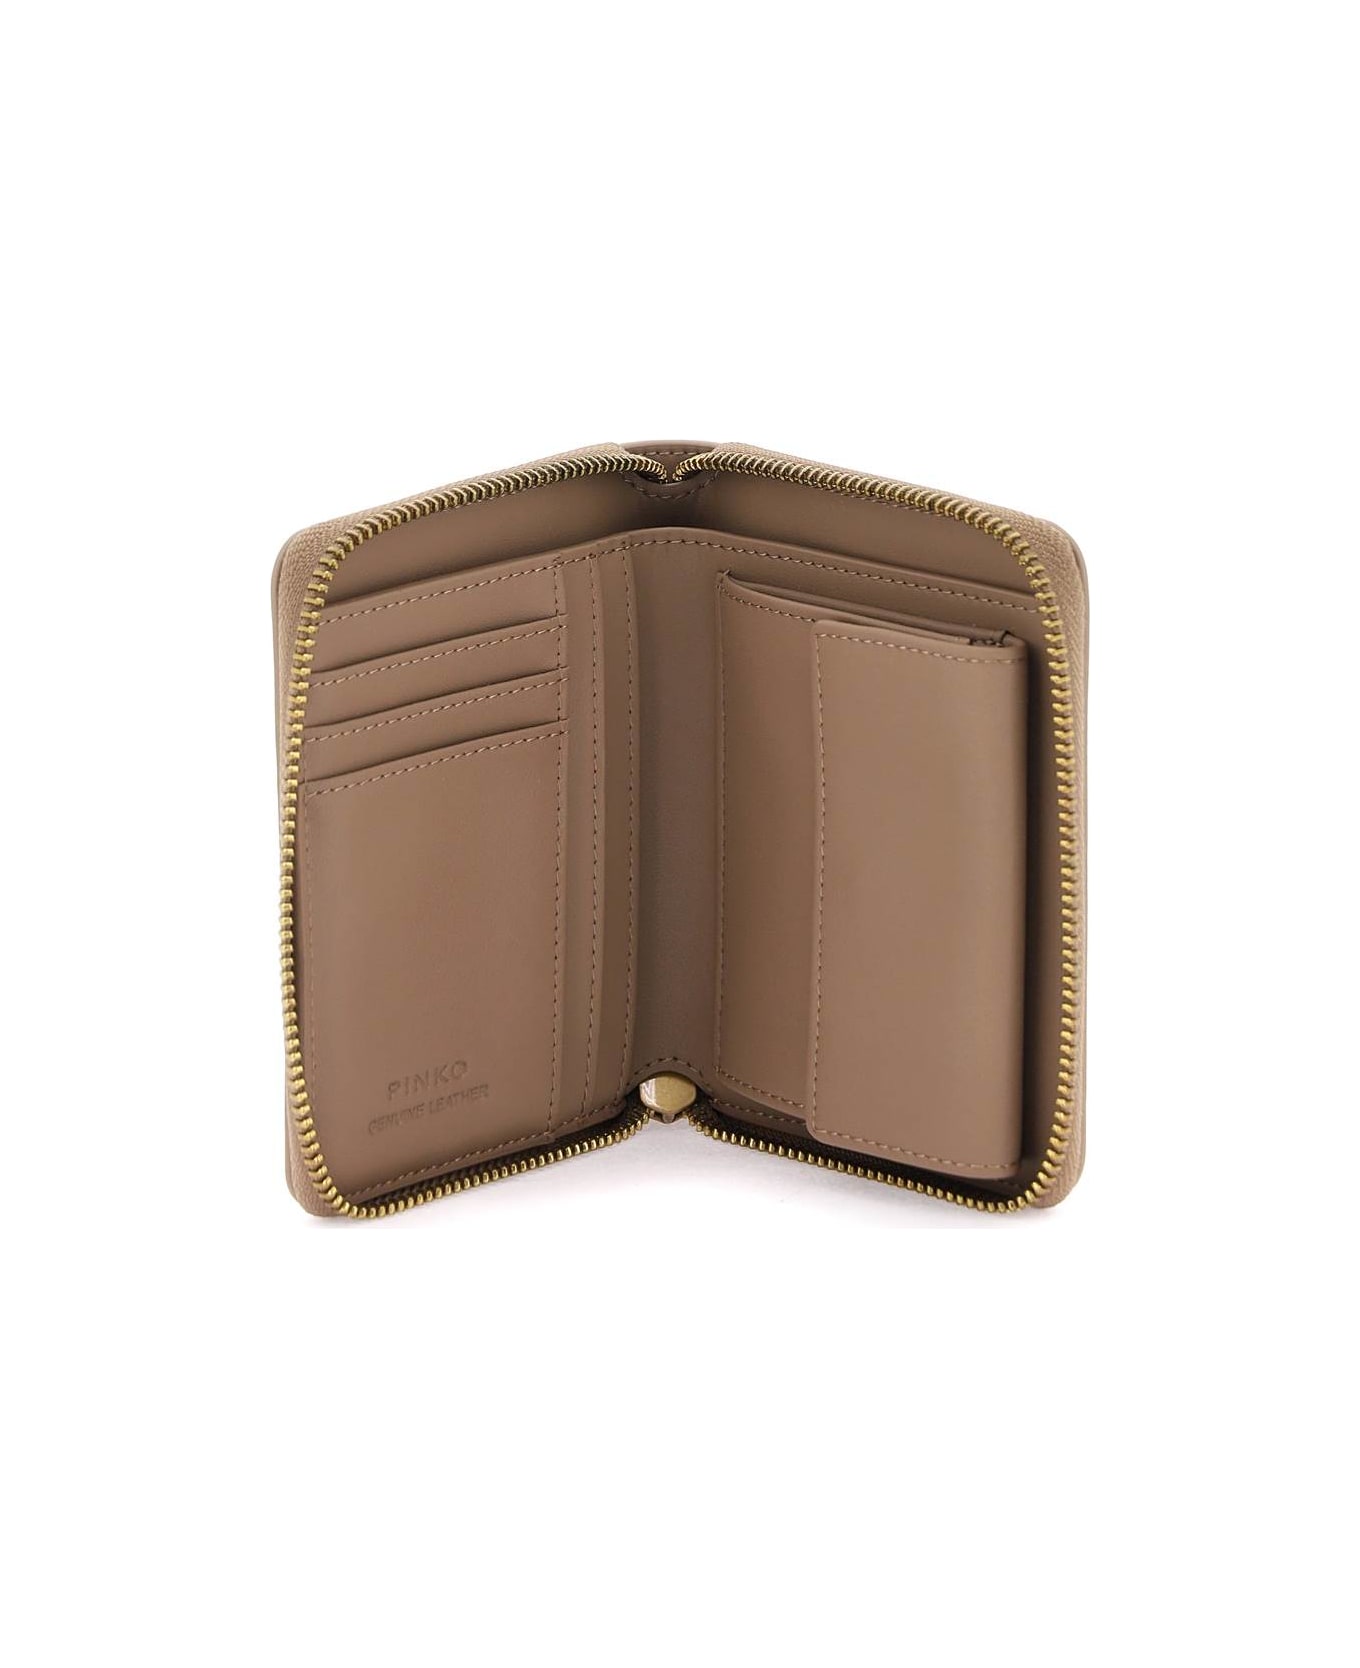 Pinko Leather Zip-around Wallet - BISCOTTO ZENZERO ANTIQUE GOLD (Beige) 財布